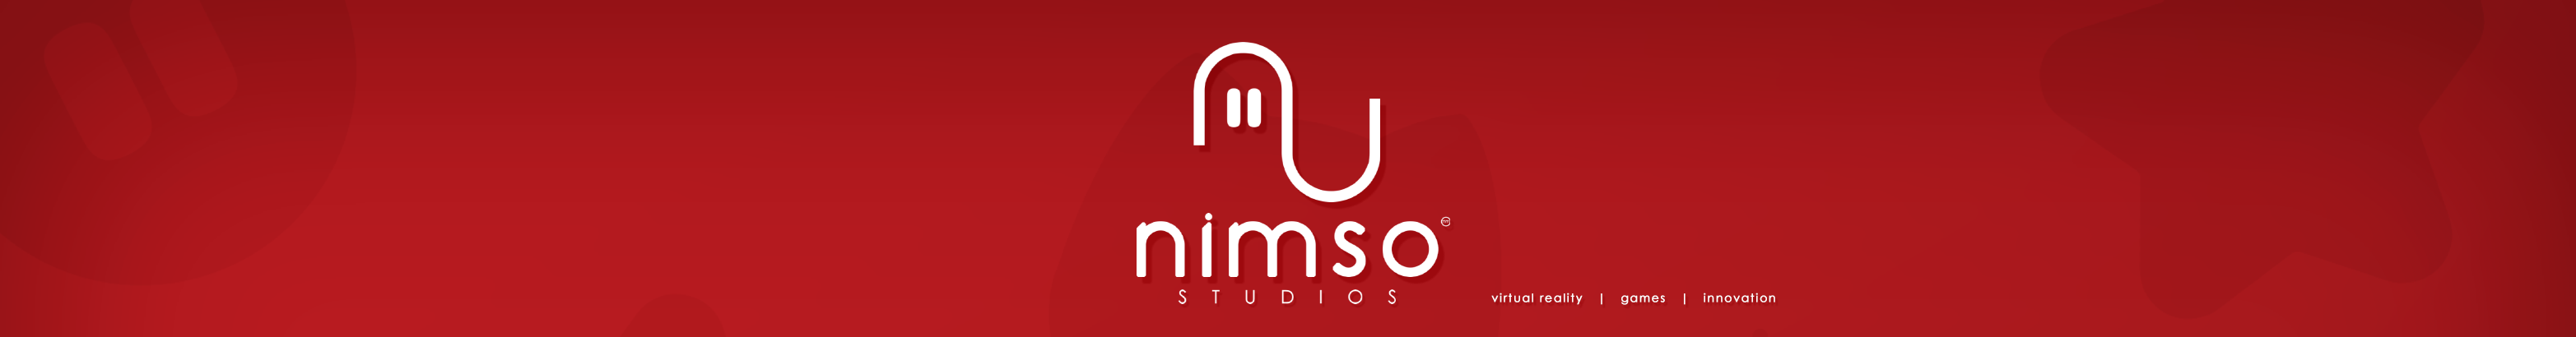 Nimso Studios のプロファイルバナー